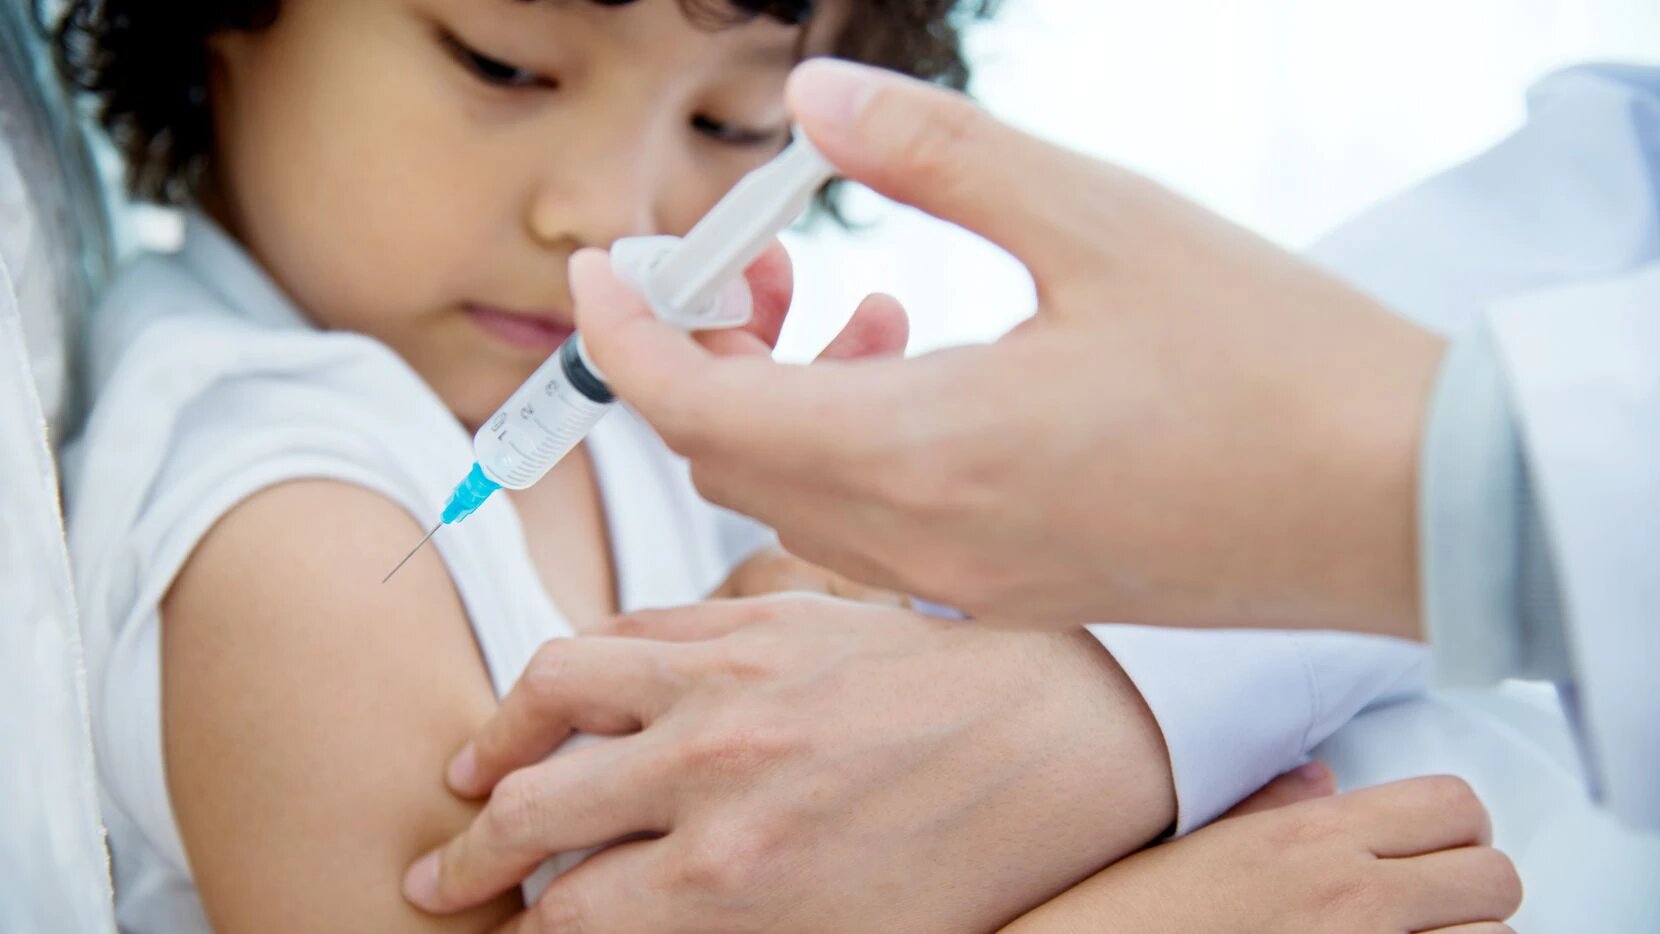 Los estudiantes podrán recibir vacunas y otros servicios médicos en las clínicas móviles. Foto: iSTOCK, Getty Images